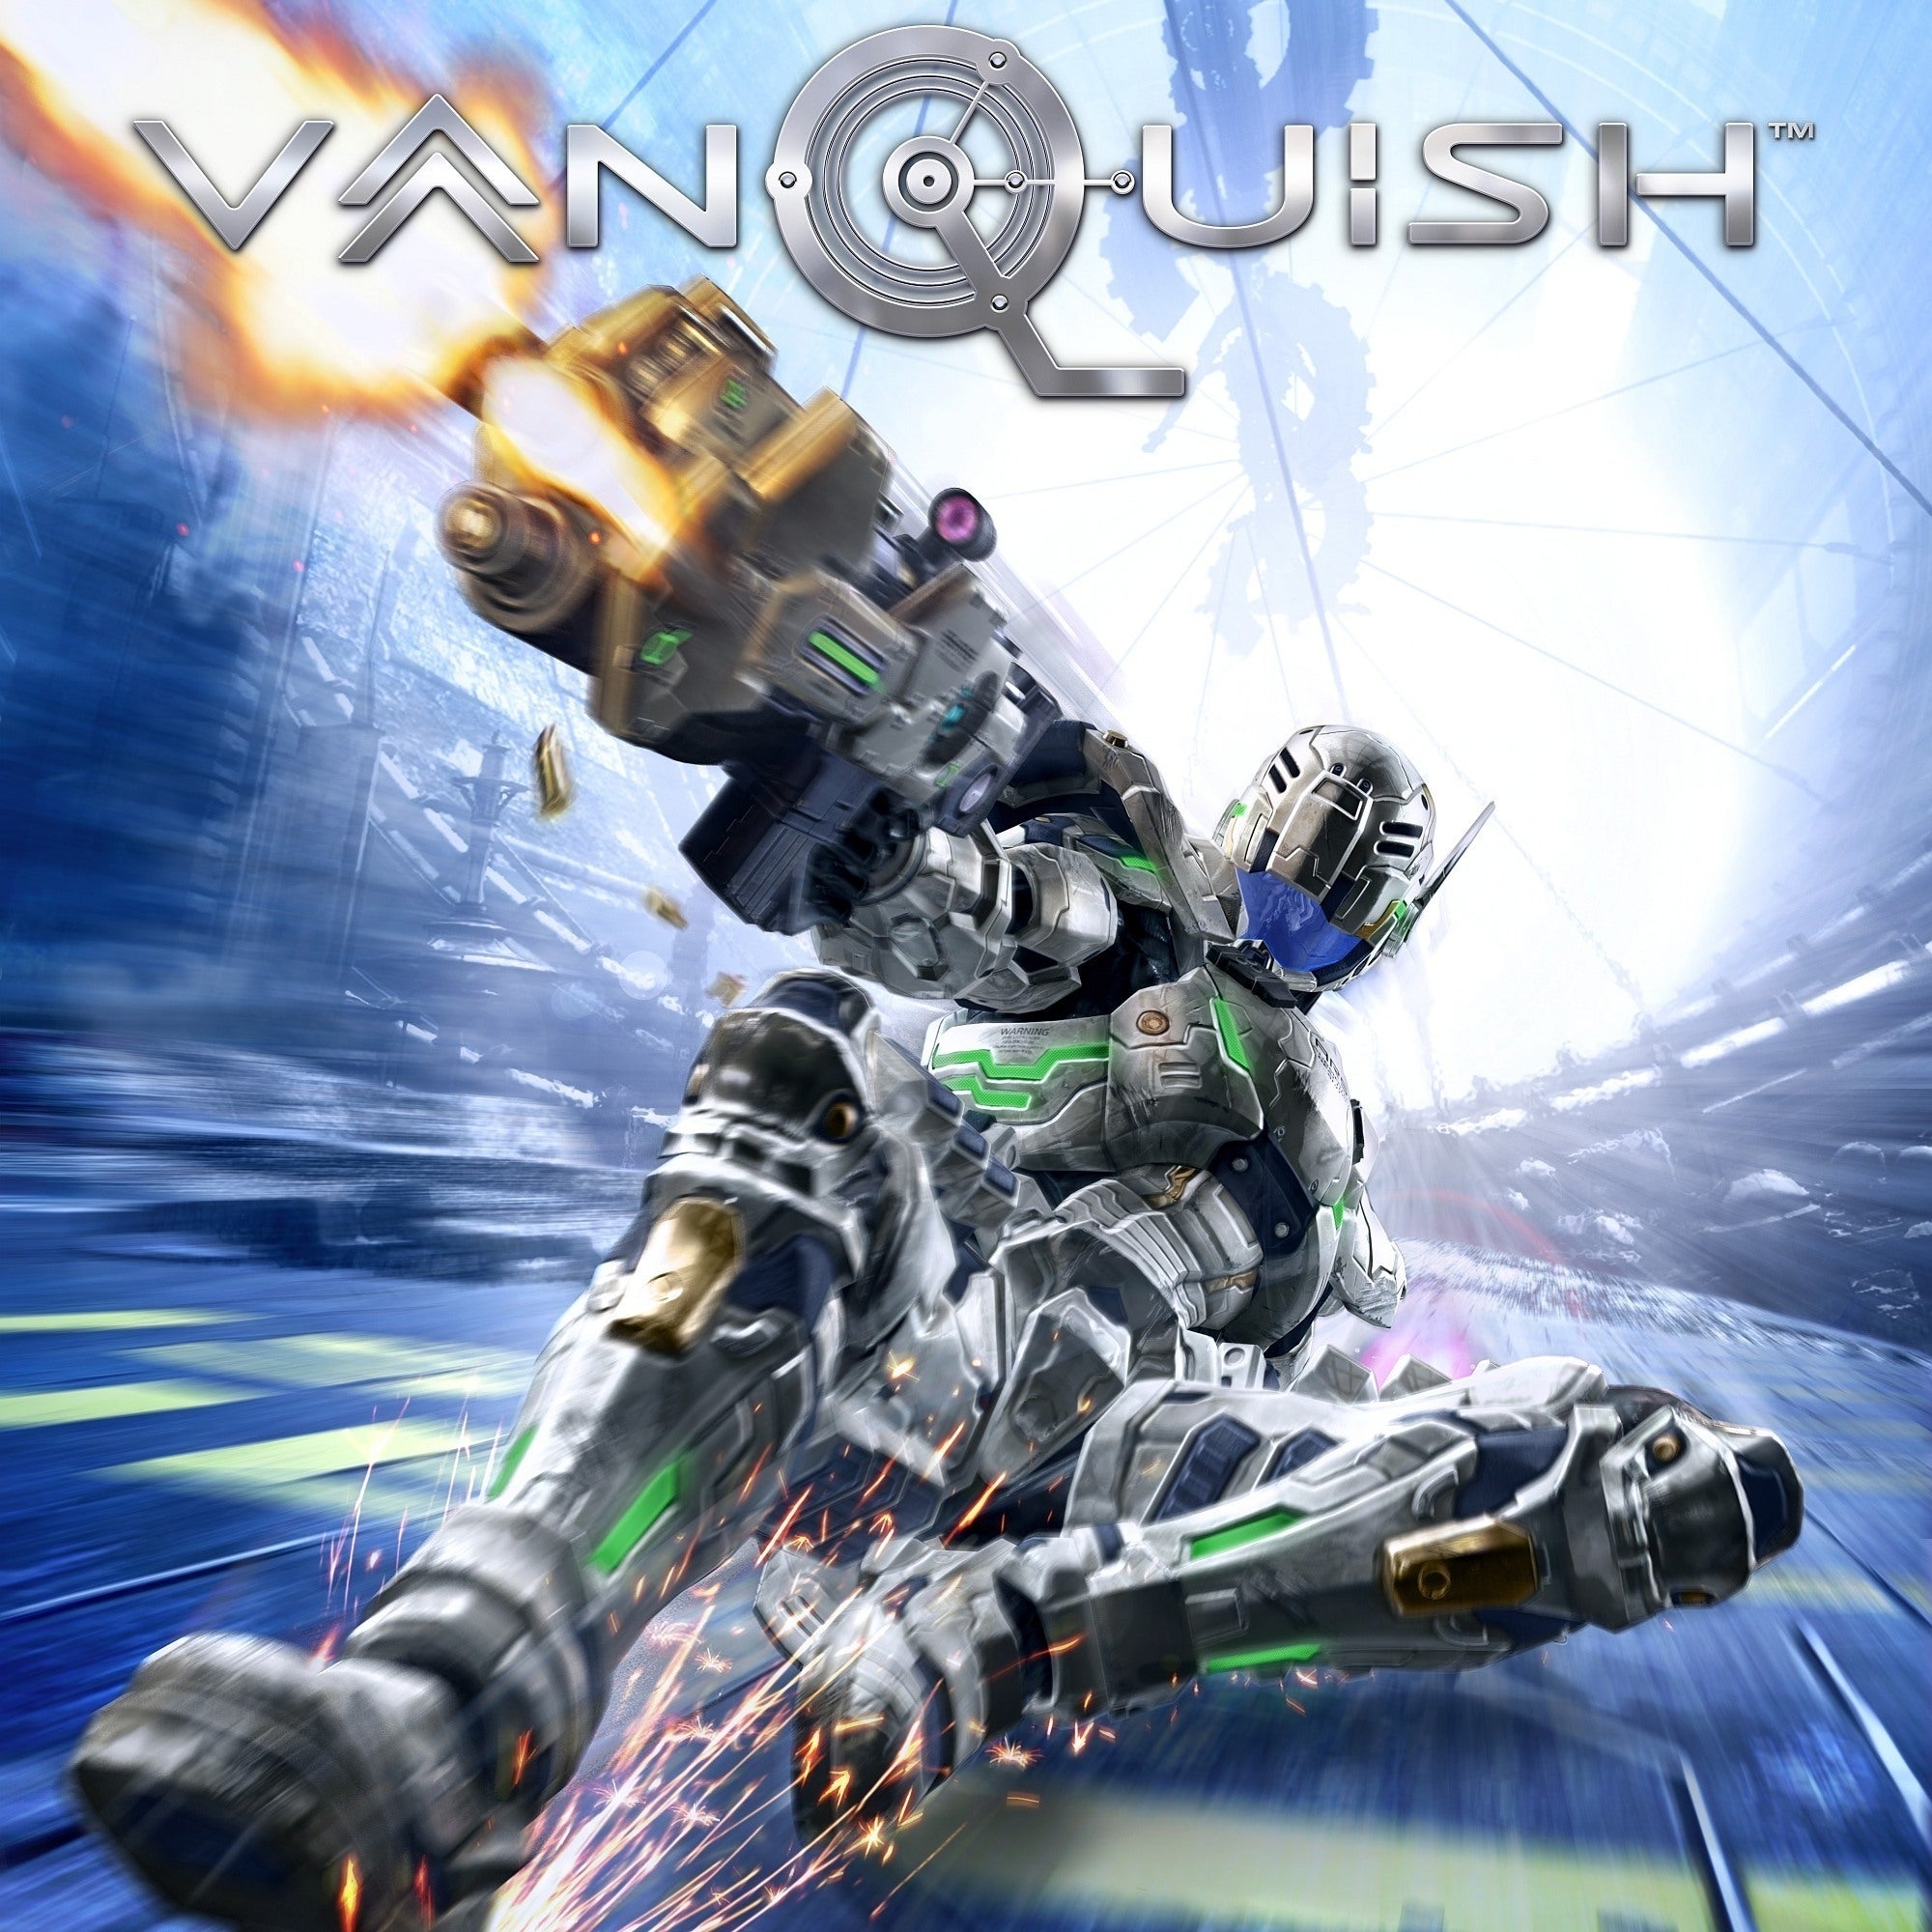 VANQUISH ORIGINAL SOUNDTRACK (2010) MP3 - Download VANQUISH ORIGINAL  SOUNDTRACK (2010) Soundtracks for FREE!